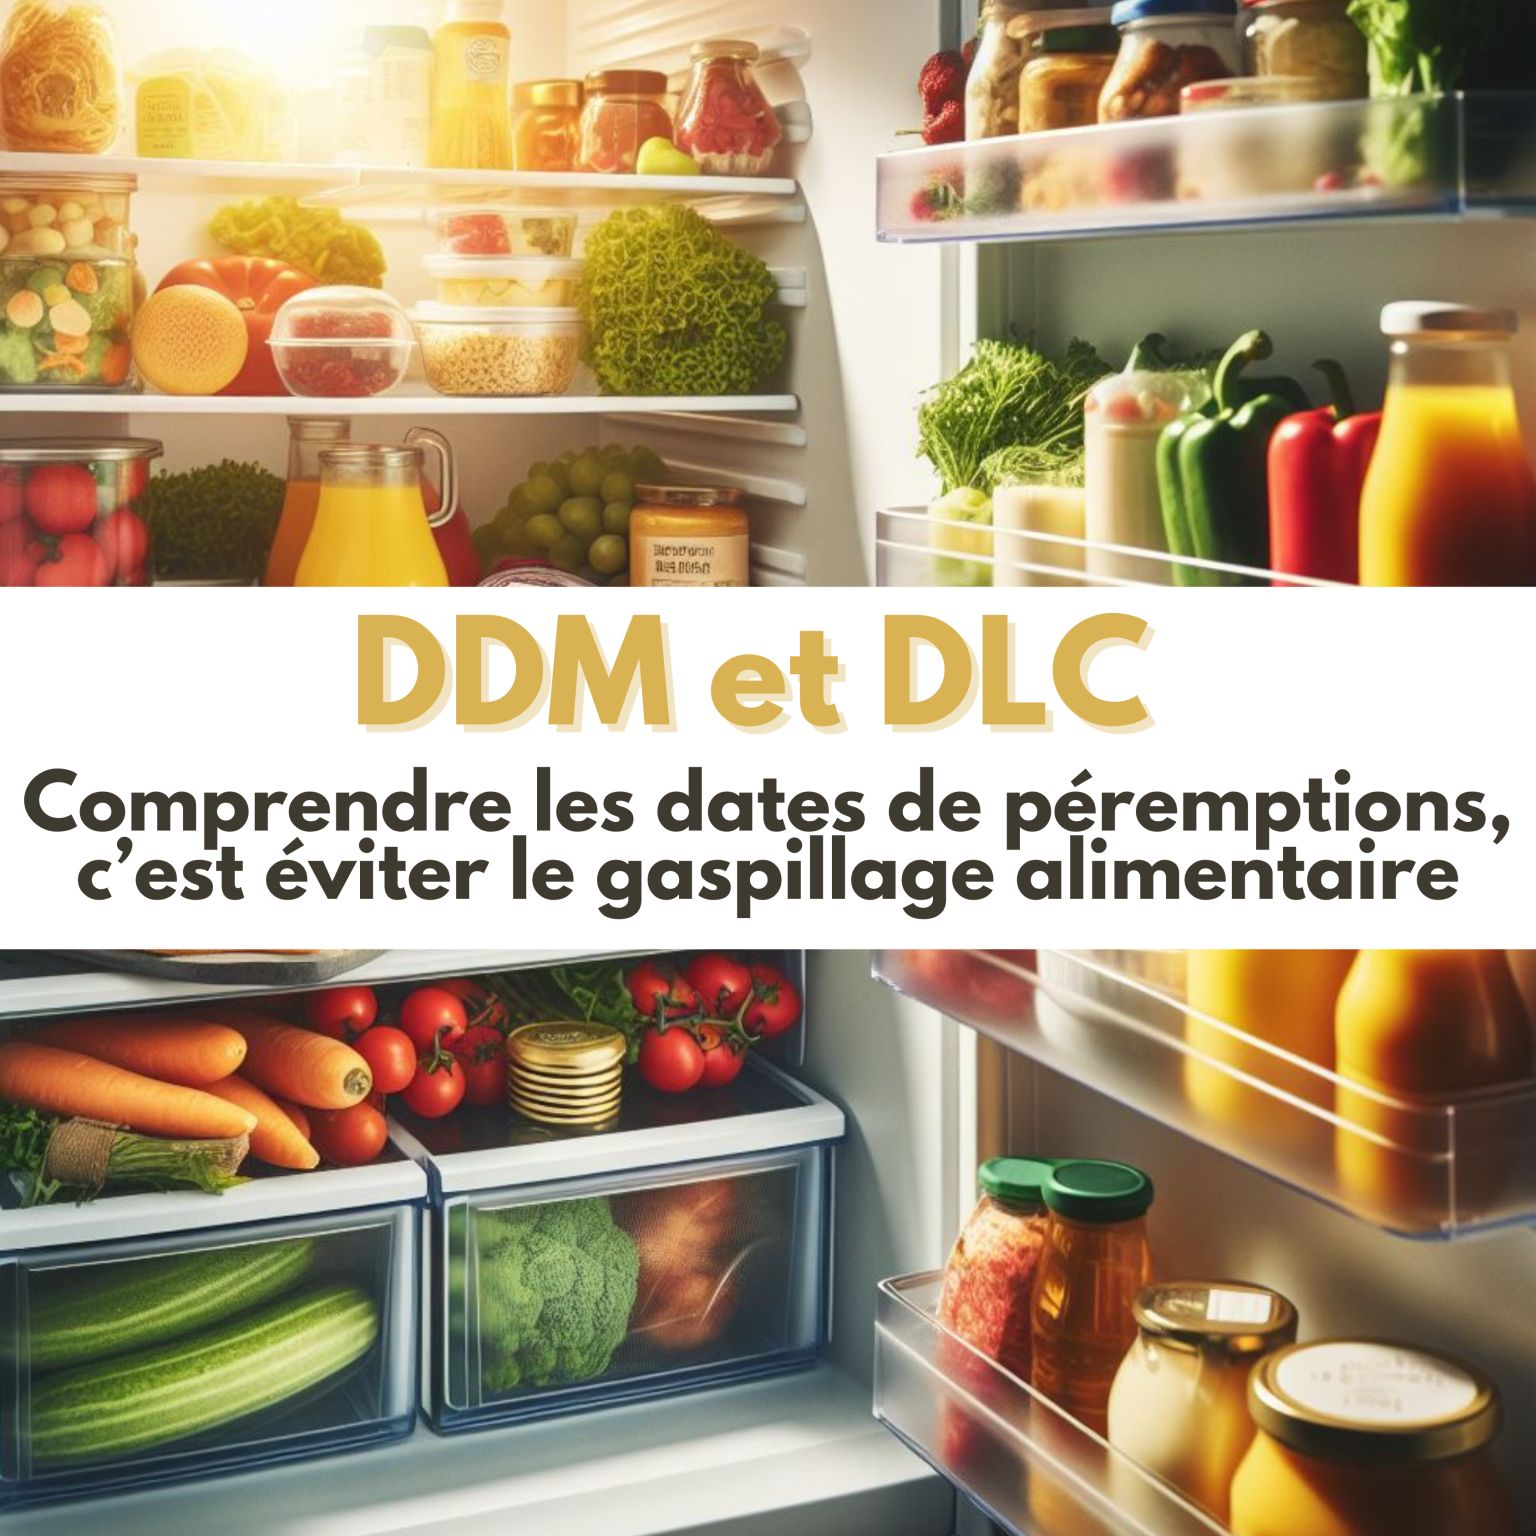 Lire la suite à propos de l’article L’optimisation des Dates de Durabilité Minimale (DDM) et des Dates Limite de Consommation (DLC) afin de réduire le gaspillage alimentaire